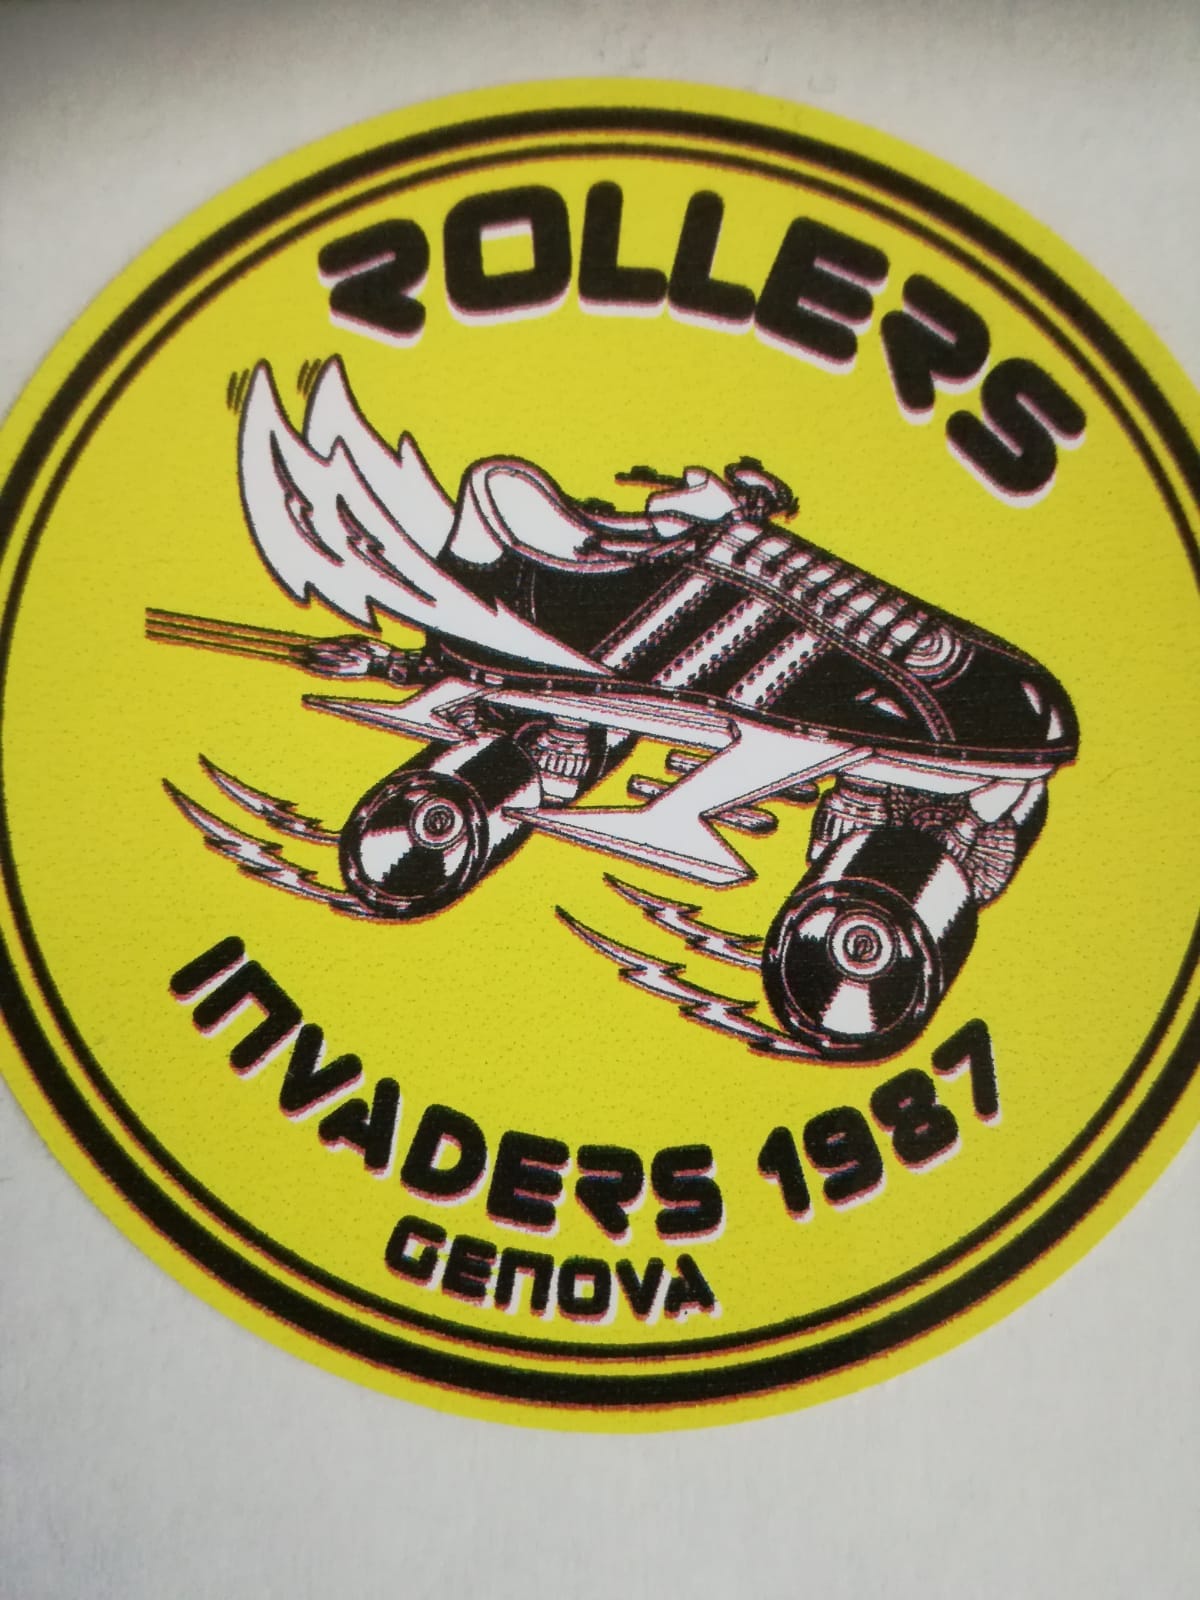 Roller invaders